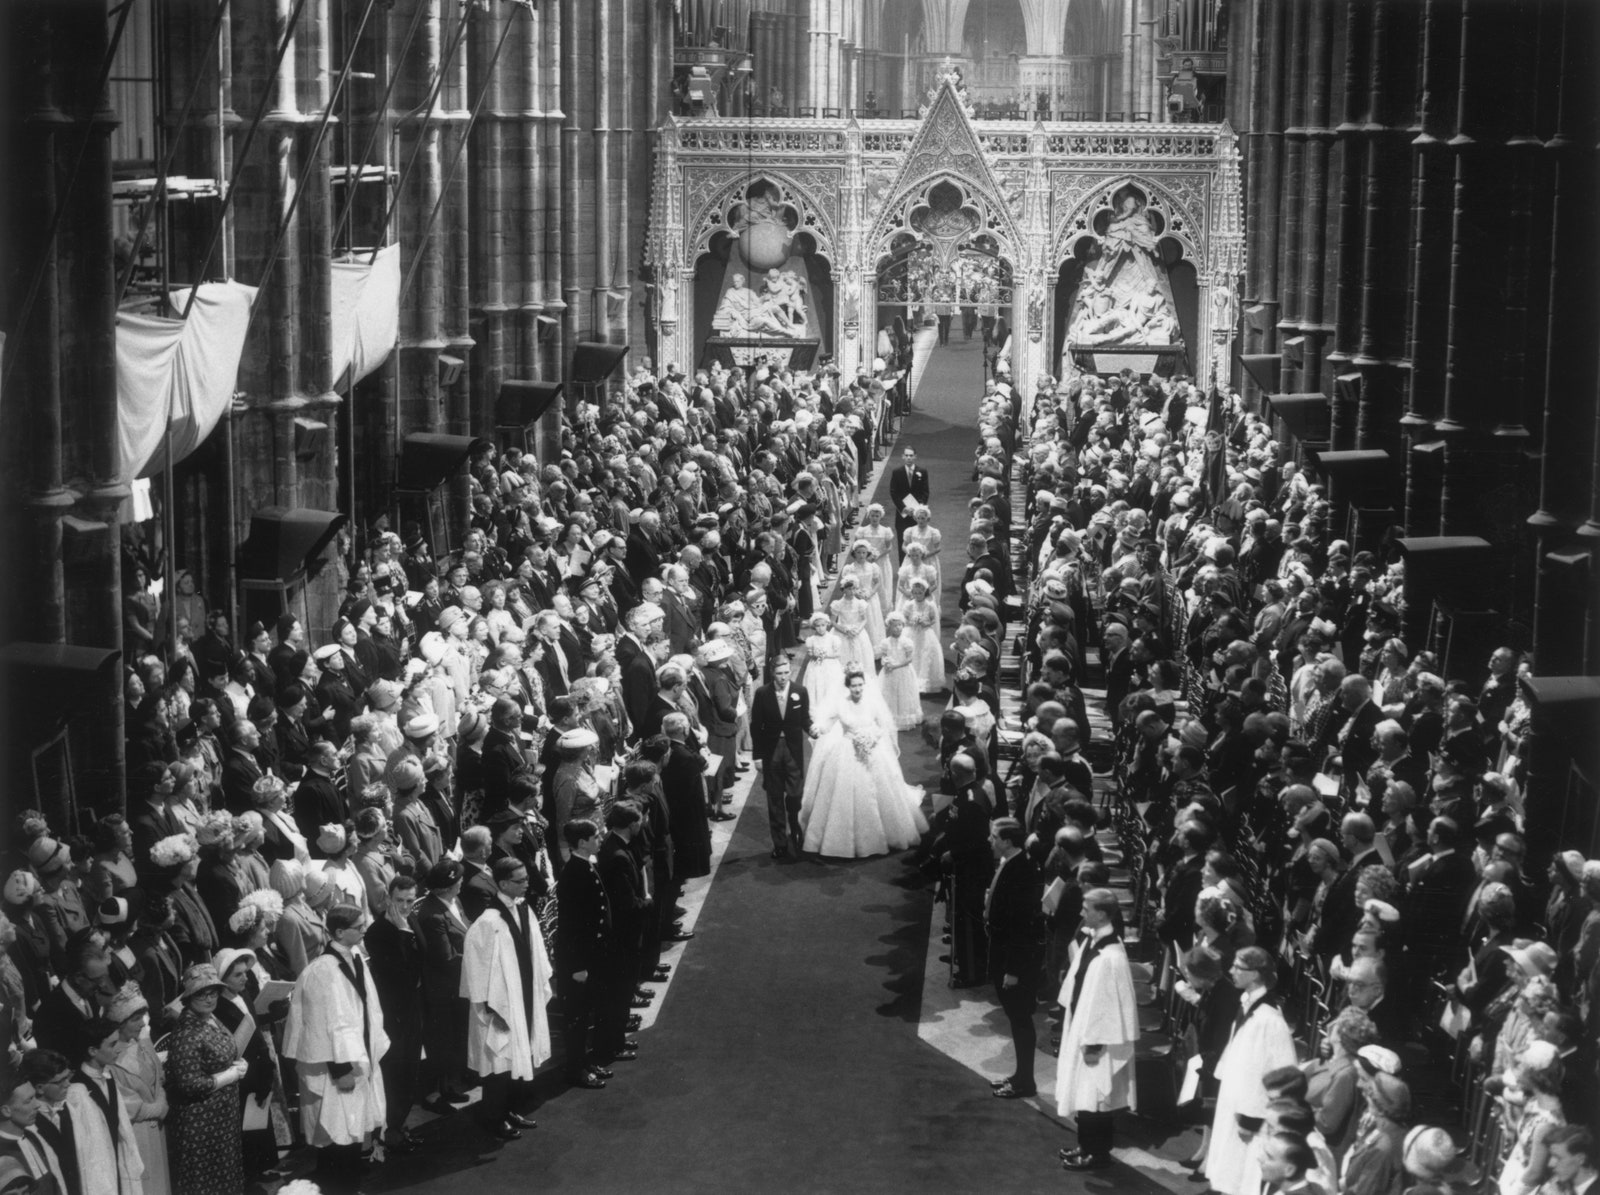 La boda de Margarita de Inglaterra y Antony Armstrong-Jones